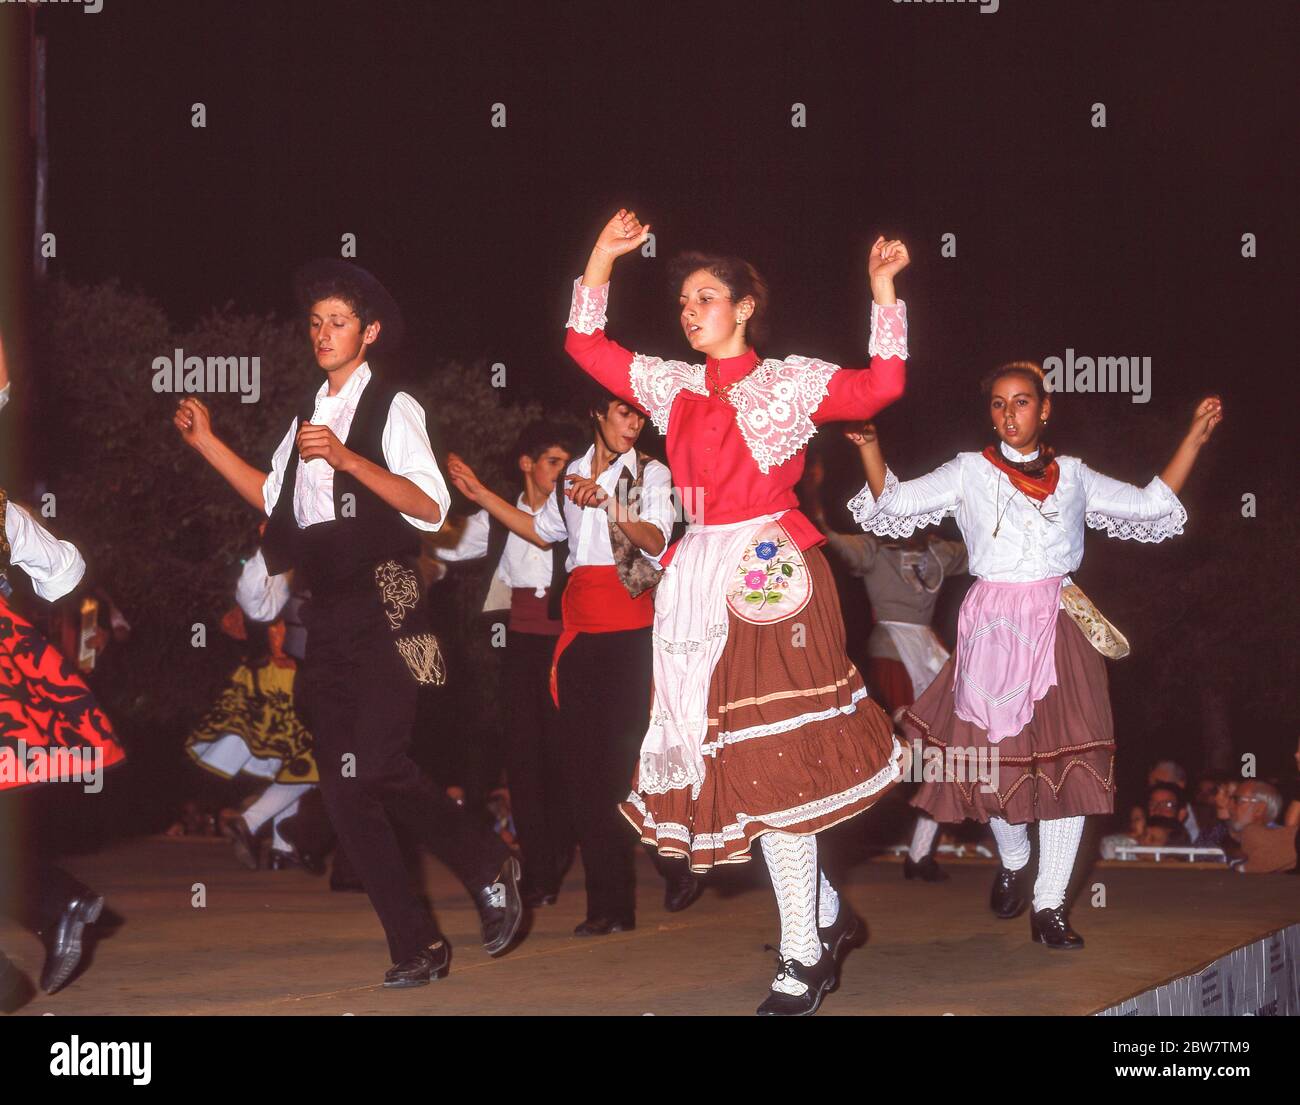 Jóvenes bailarines actuando en un lugar al aire libre, Albufeira, región del Algarve, Portugal Foto de stock